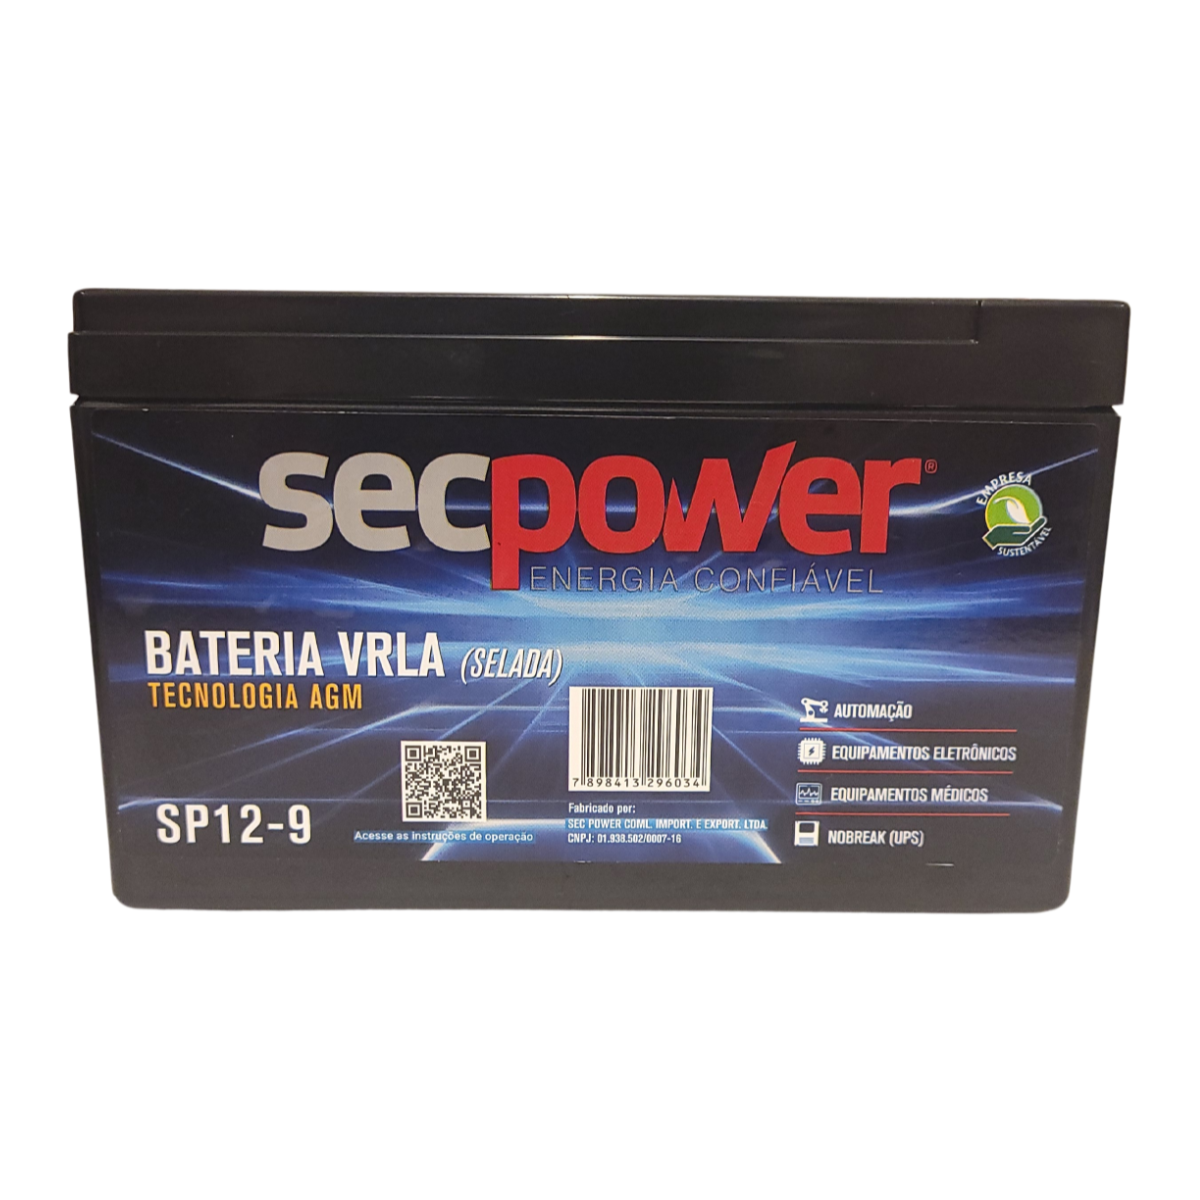 Bateria Secpower P/nobreak 12v 9.0ah Sp 1290